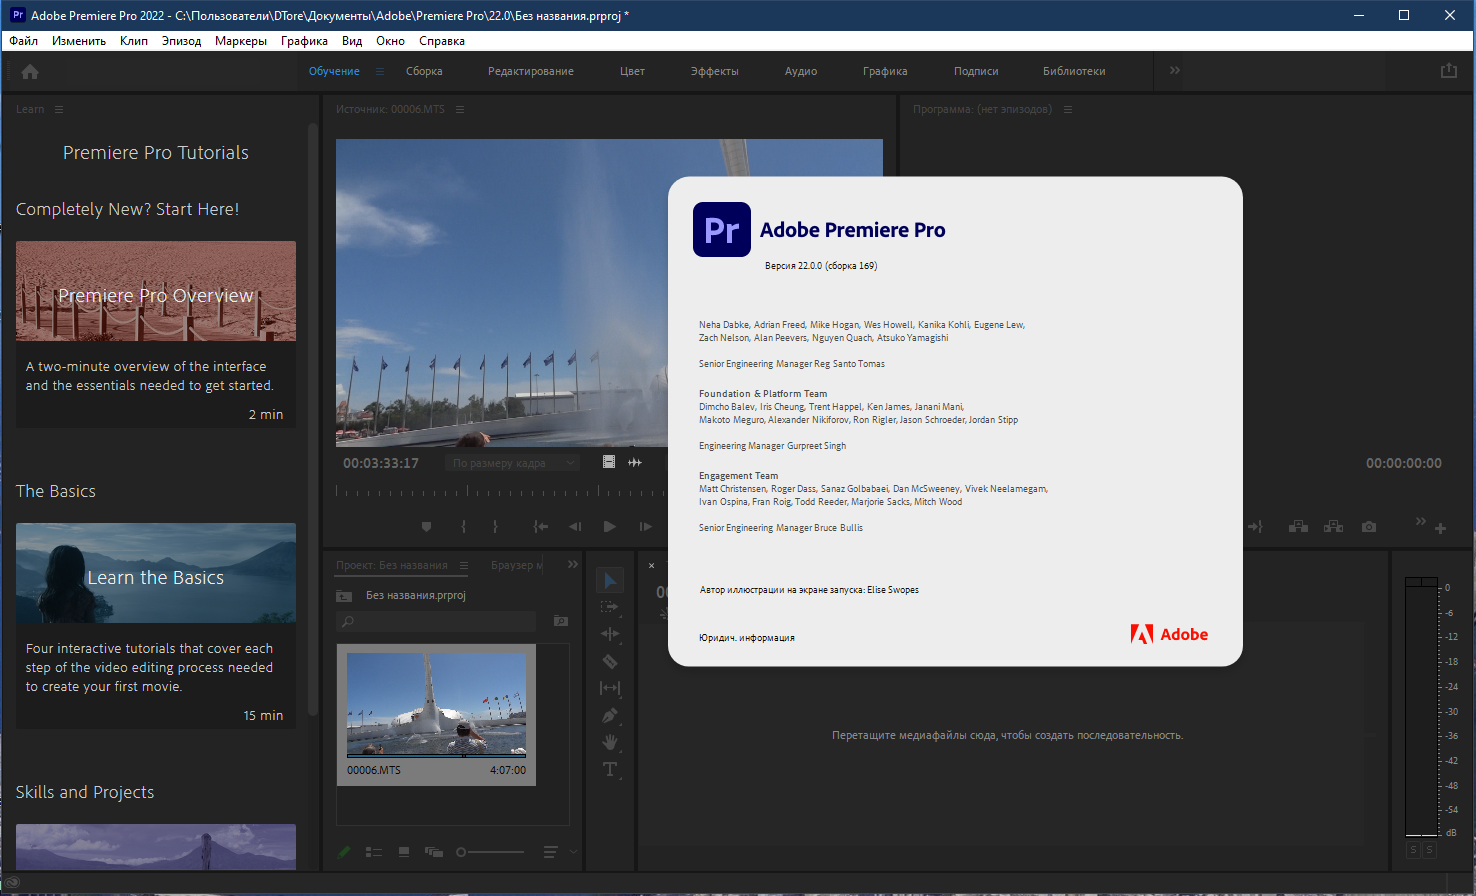 Adobe Premiere Pro 2022 22.1.1.72 [x64] (2021) PC | RePack by KpoJIuK